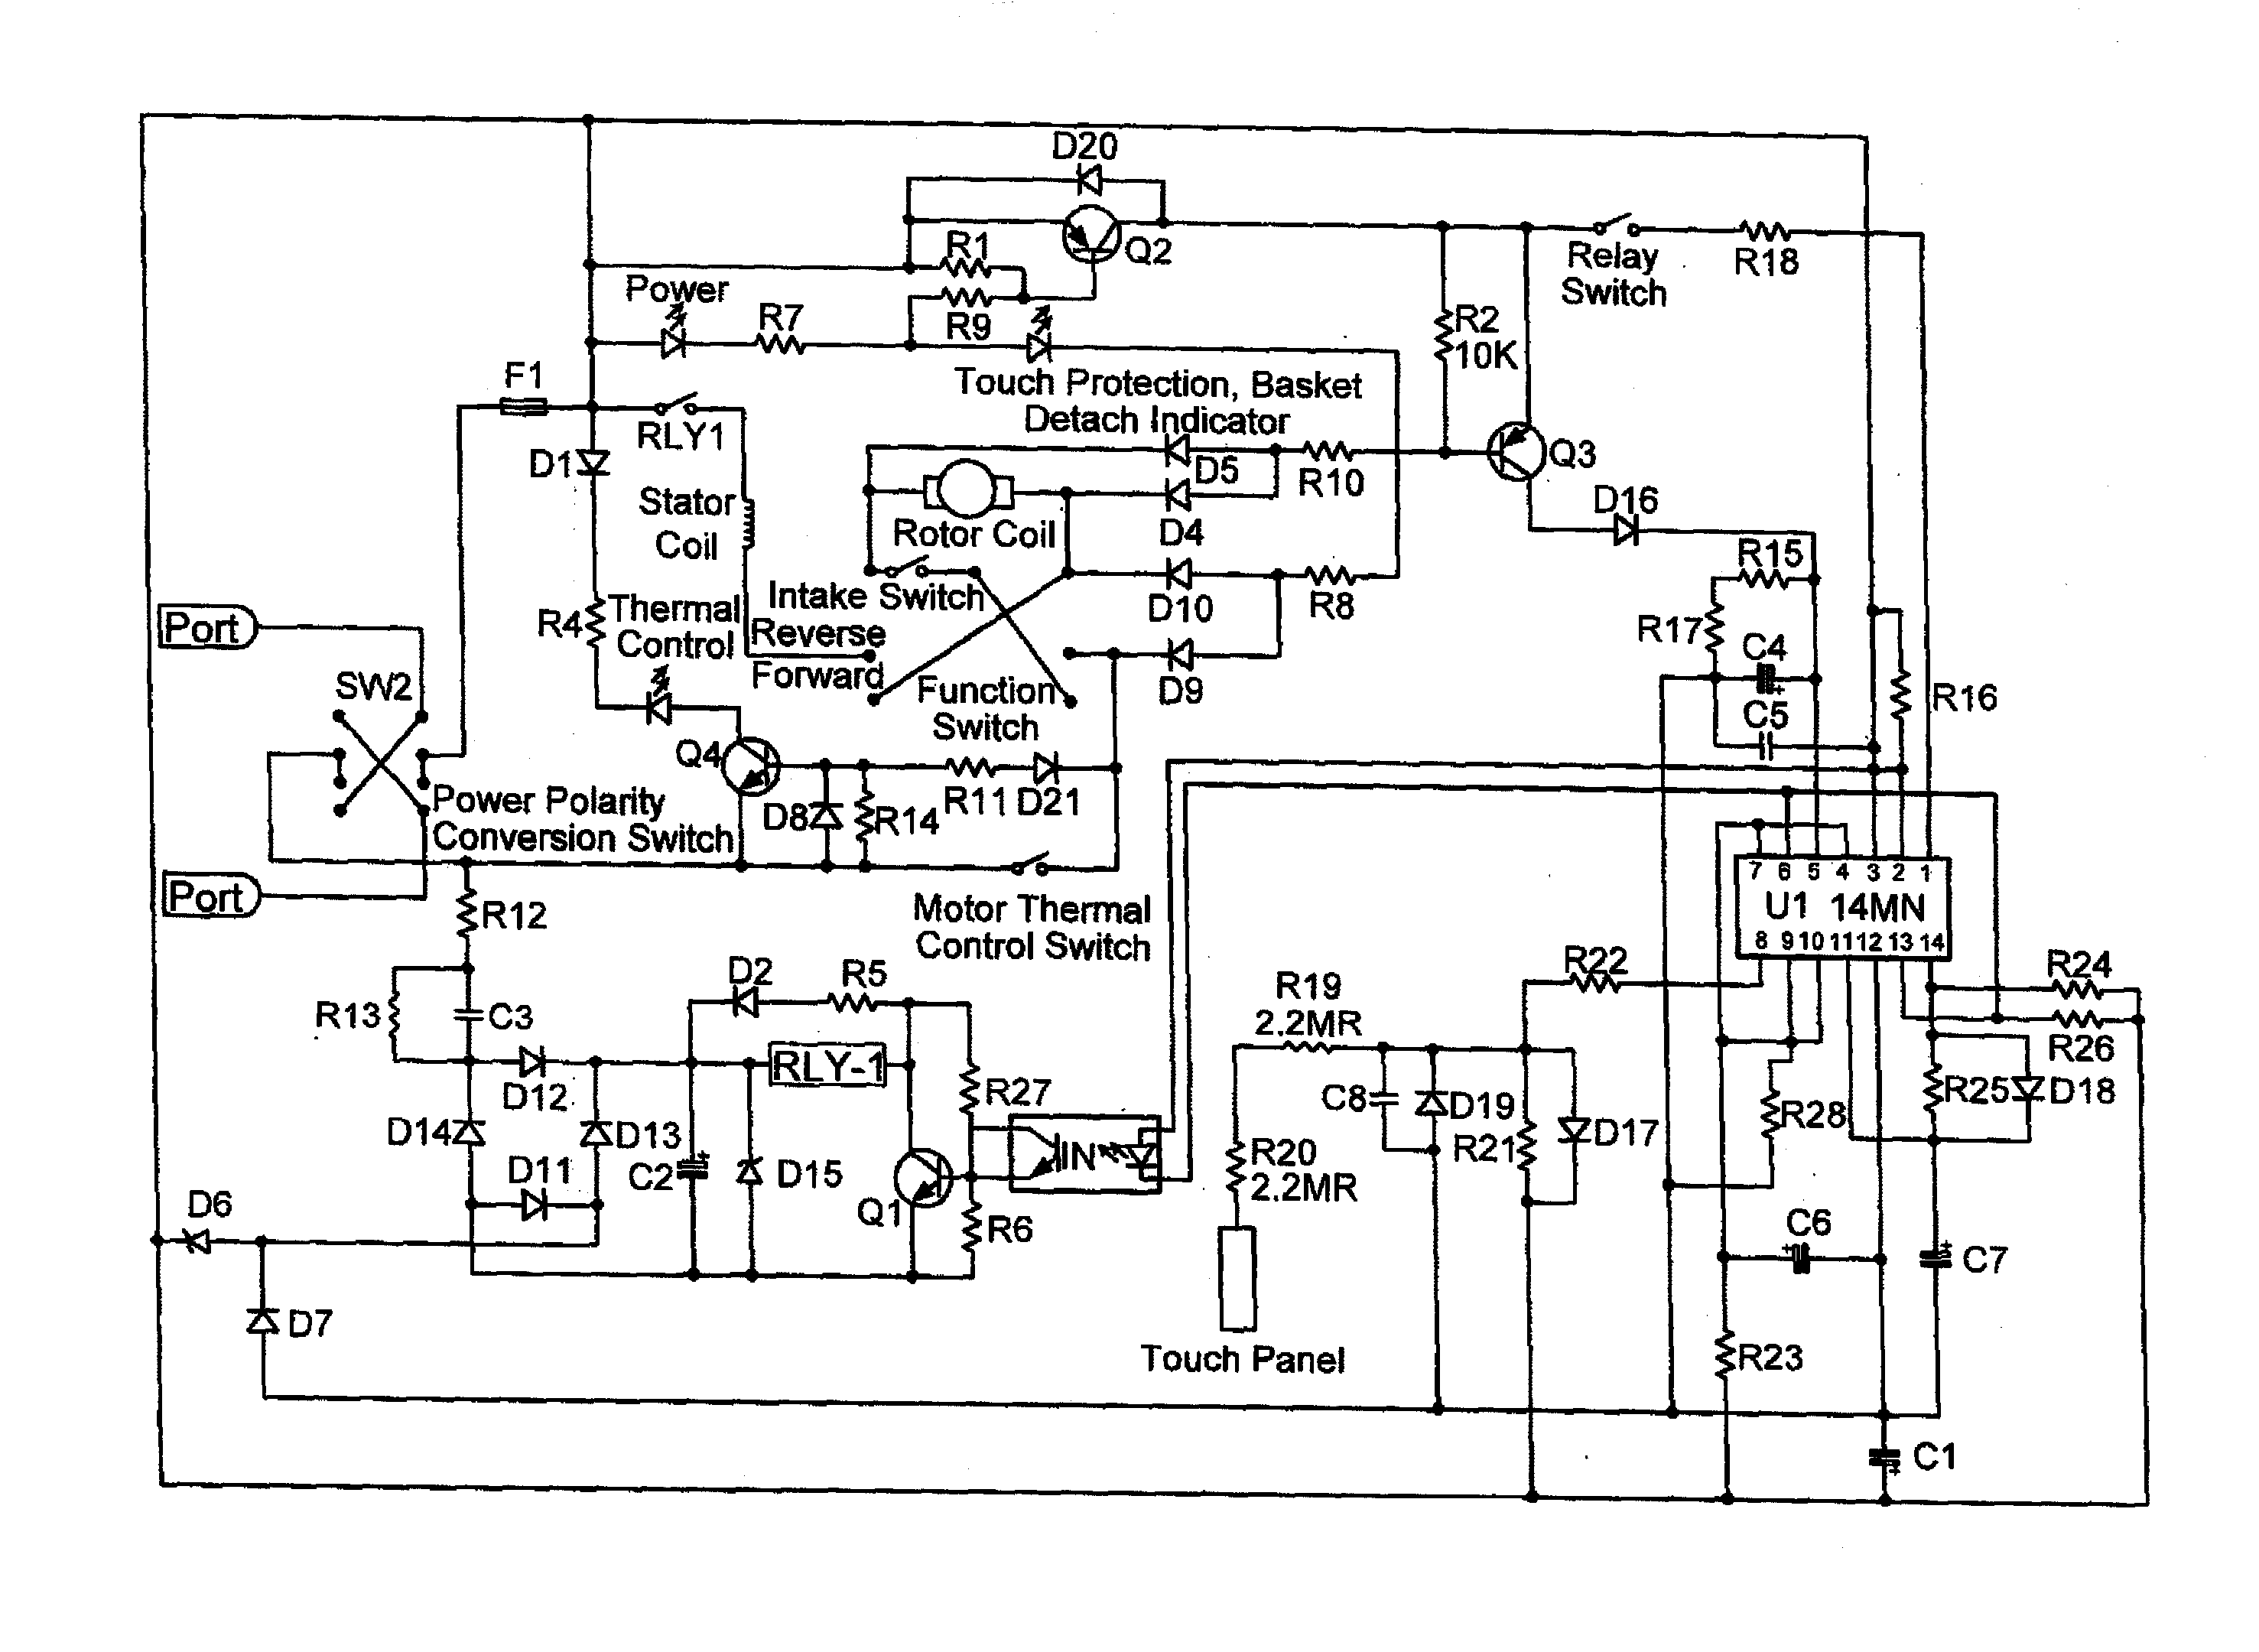 fellowes w10c shredder wiring diagram